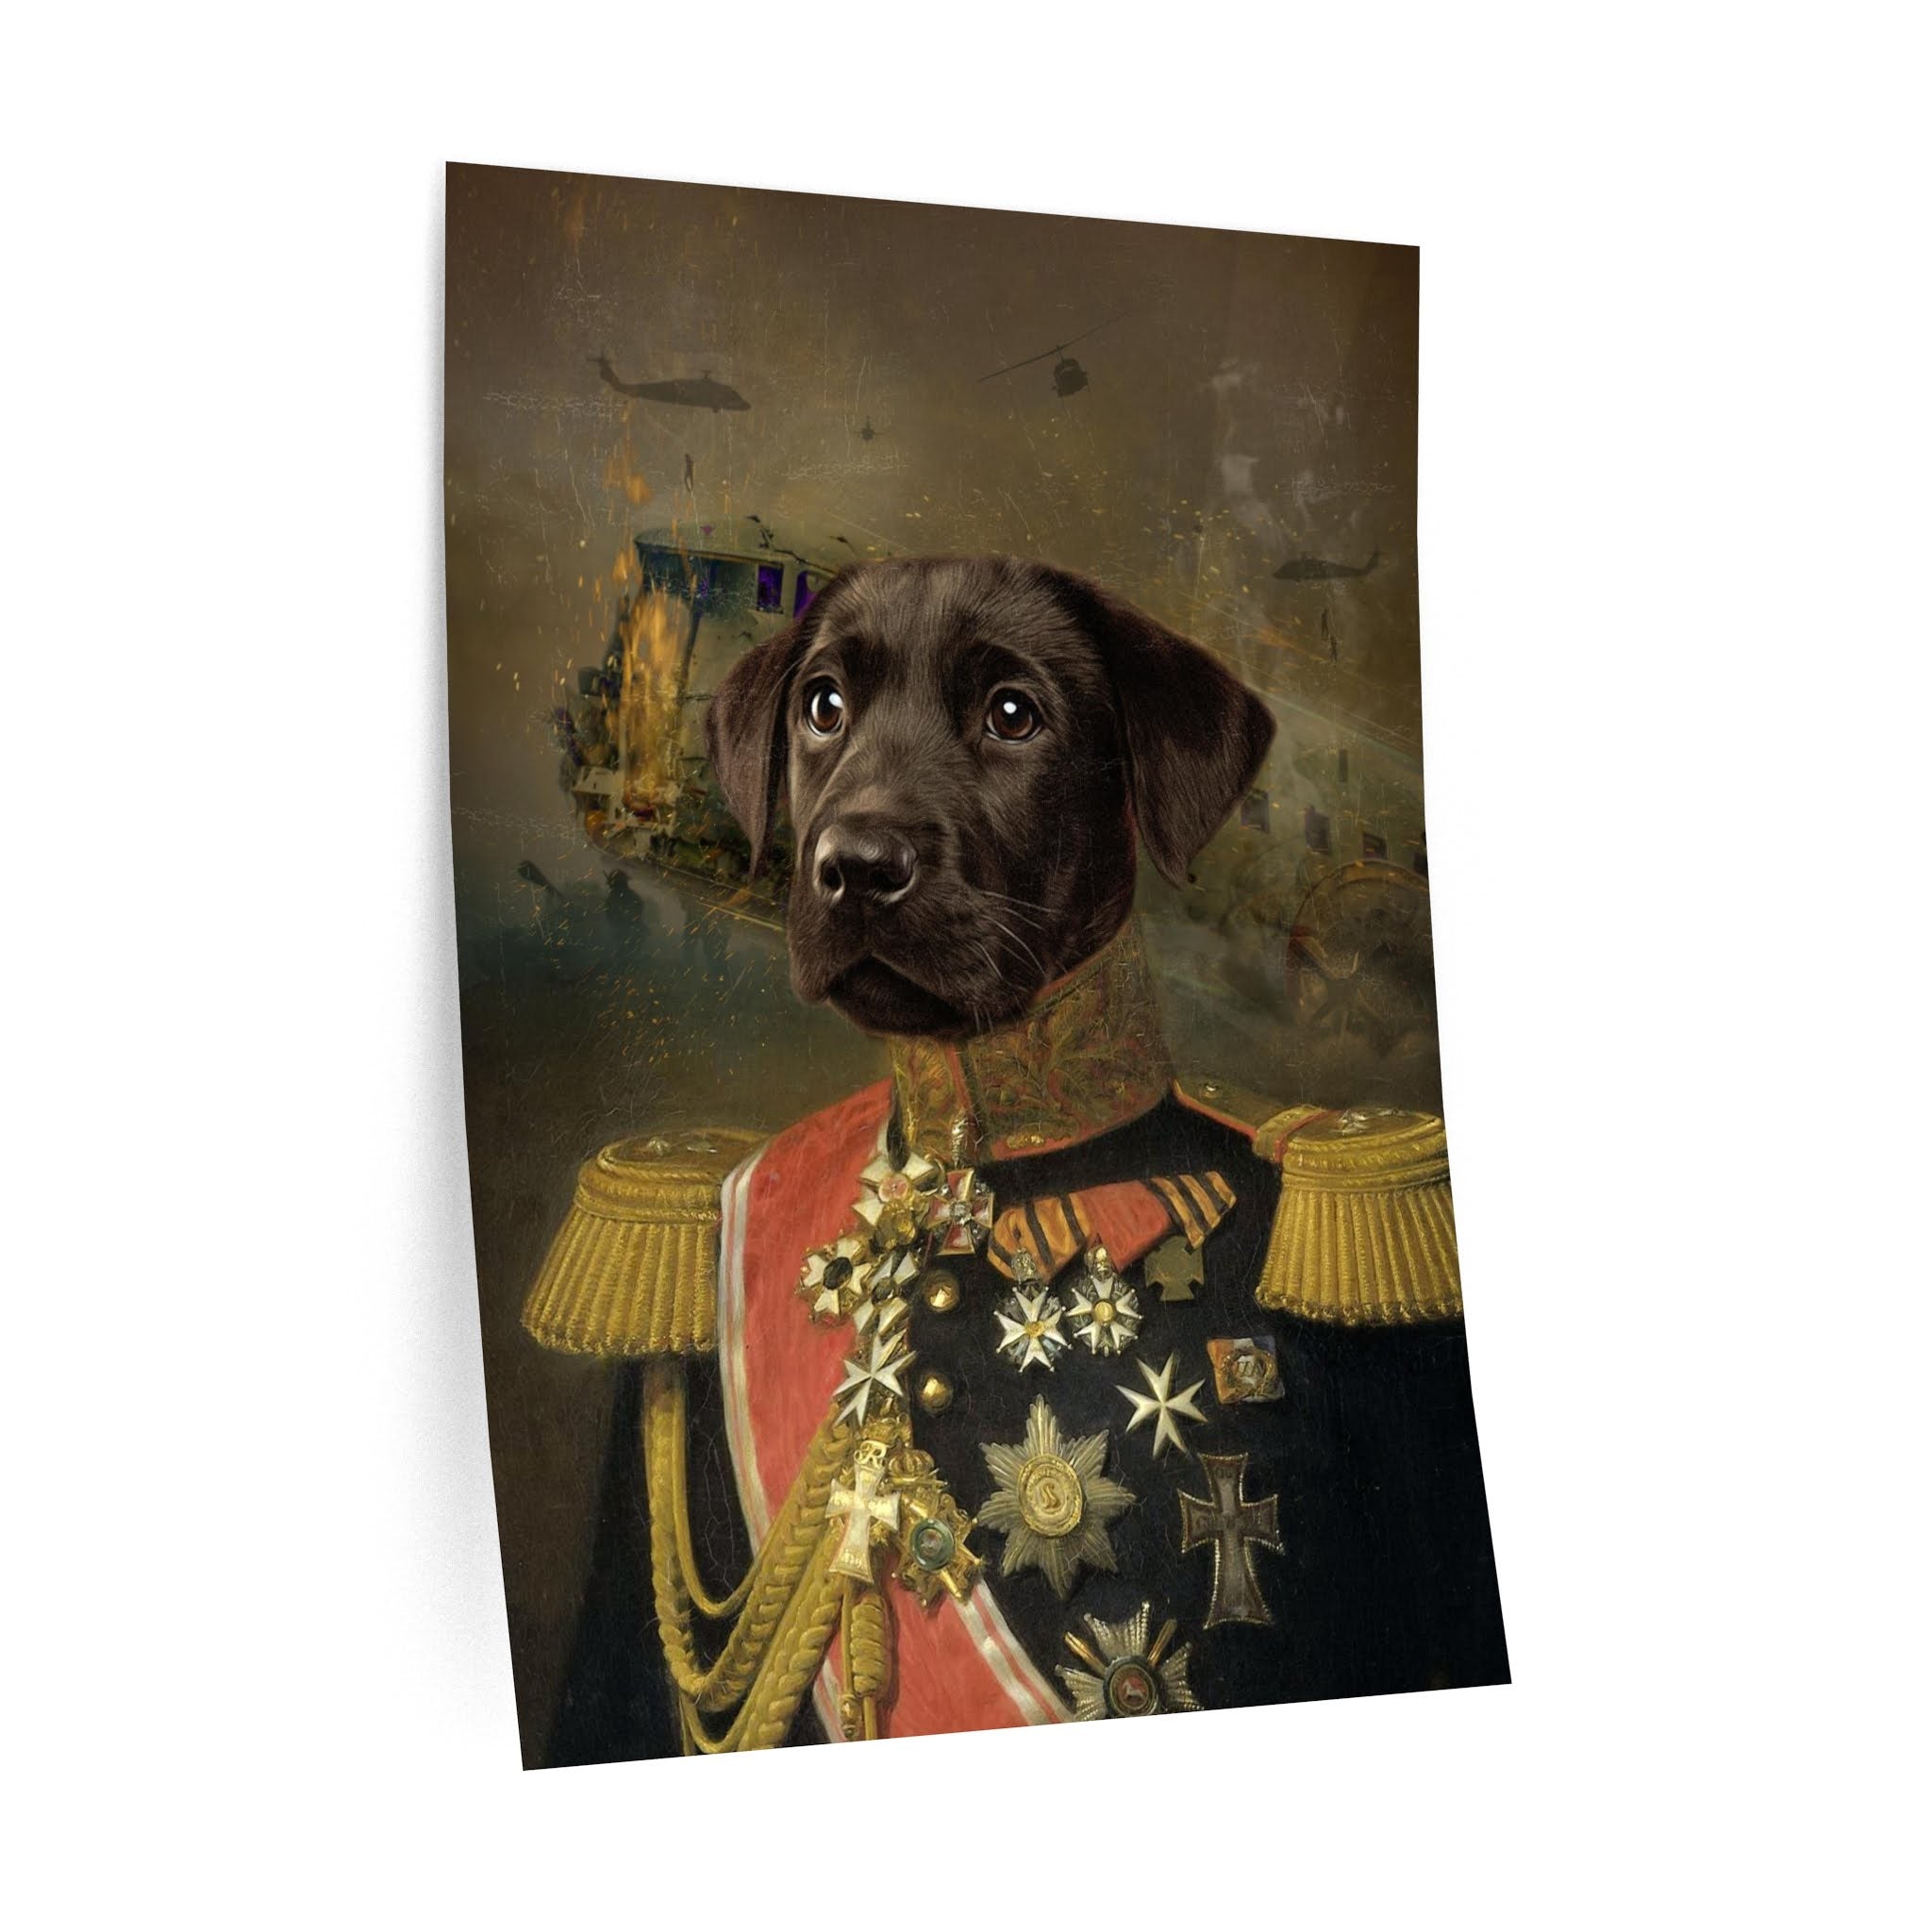 Custom Pet Portrait,Renaissance Pet Portraits,Regal Royal Pet